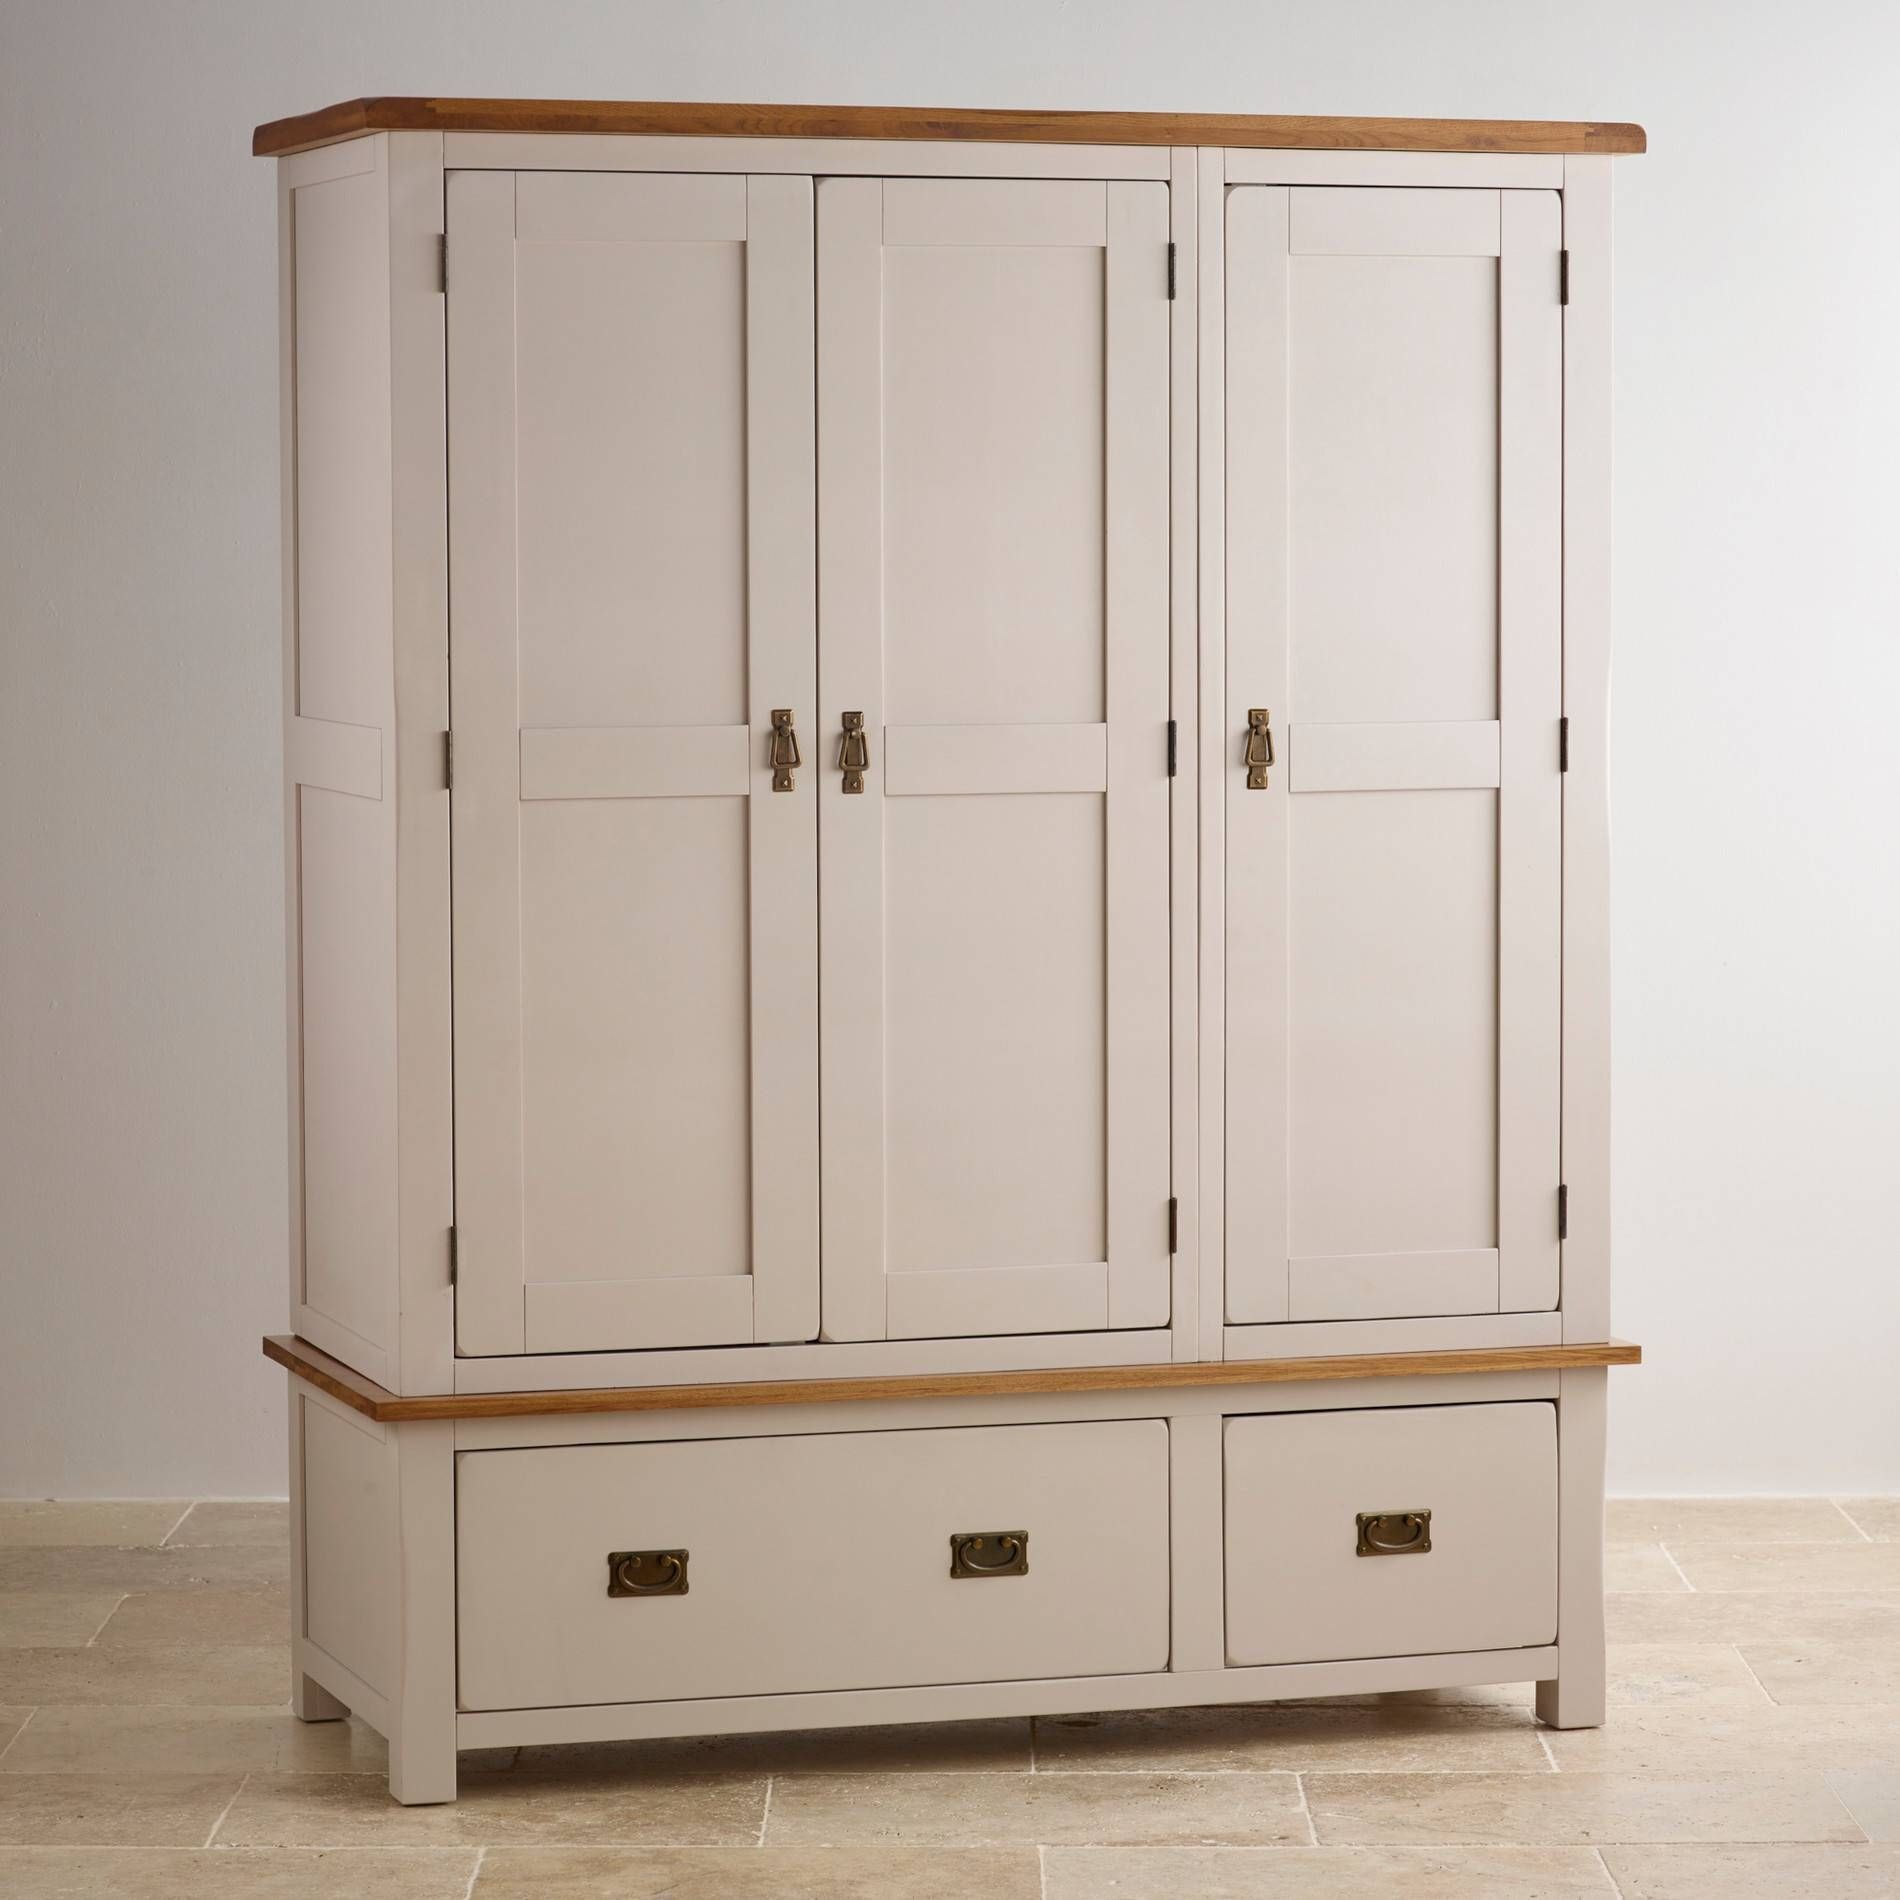 Kemble Triple Wardrobe In Painted Oak | Oak Furniture Land Regarding Triple Wardrobes With Mirror (View 13 of 15)